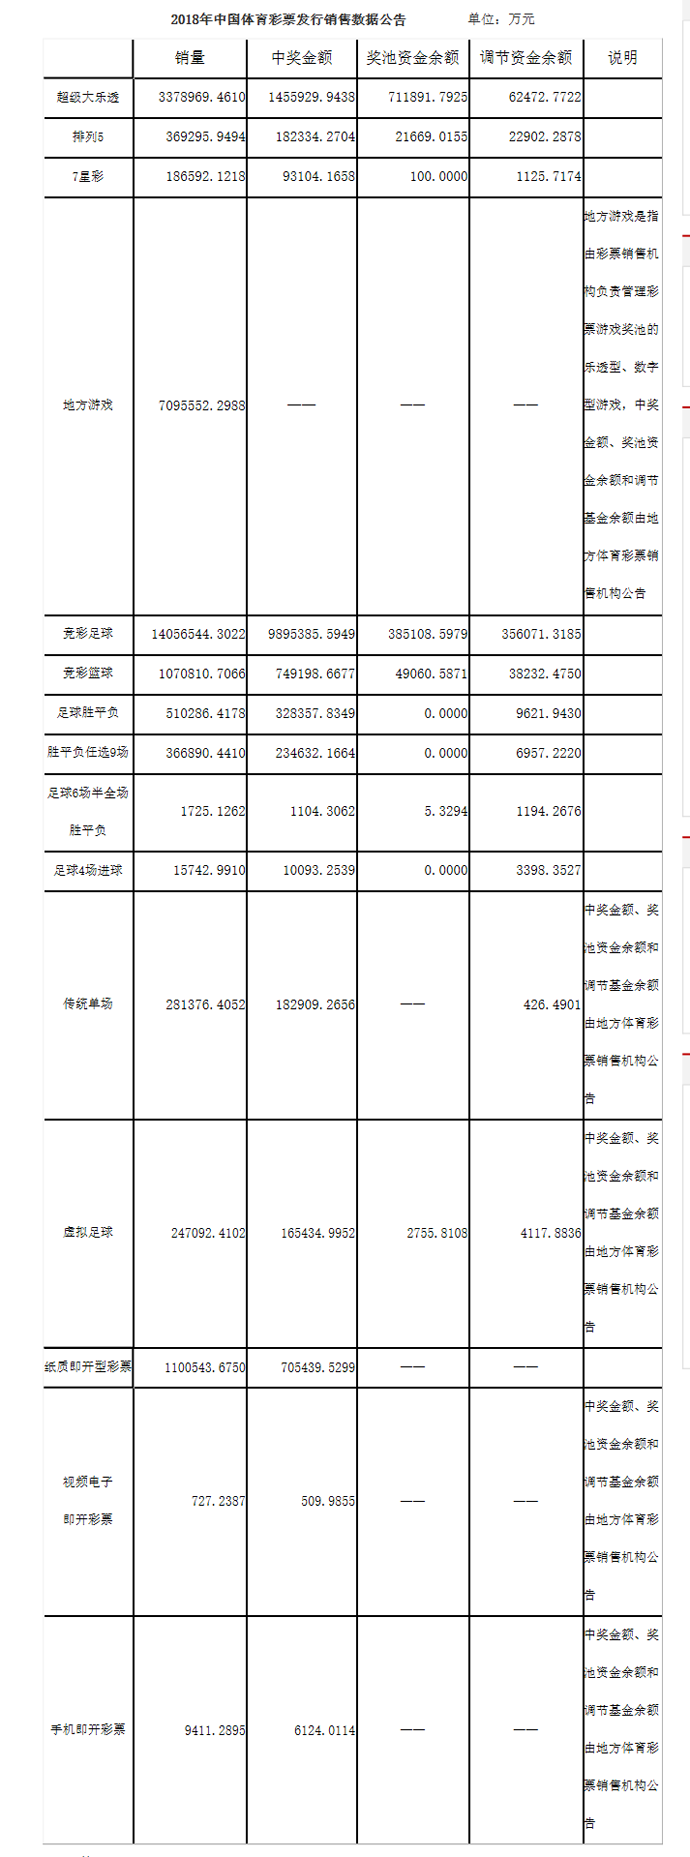 2018年度中国体育彩票发行销售数据